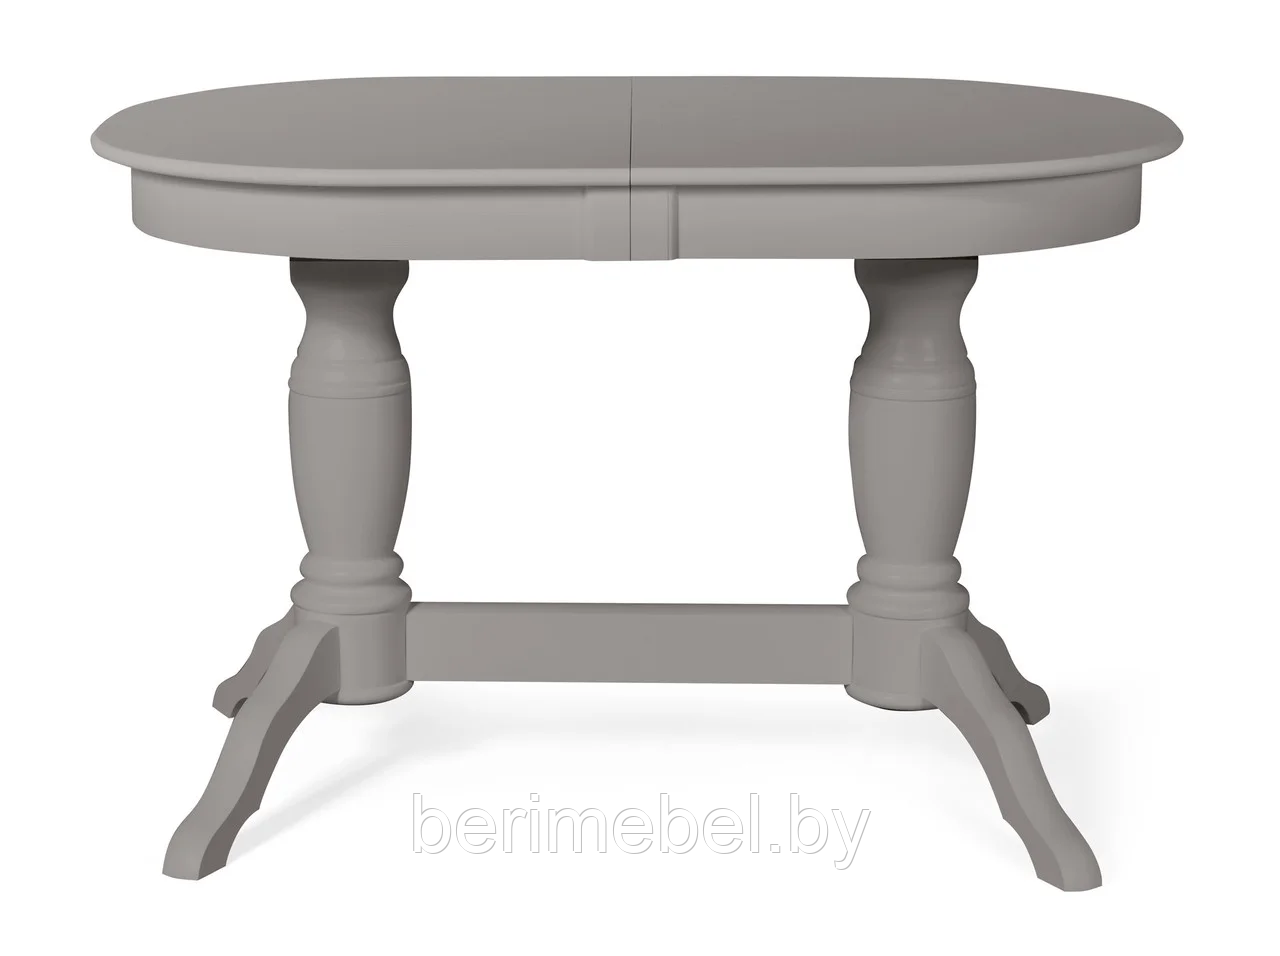 Стол обеденный "Пан" раздвижной Мебель-Класс Серый